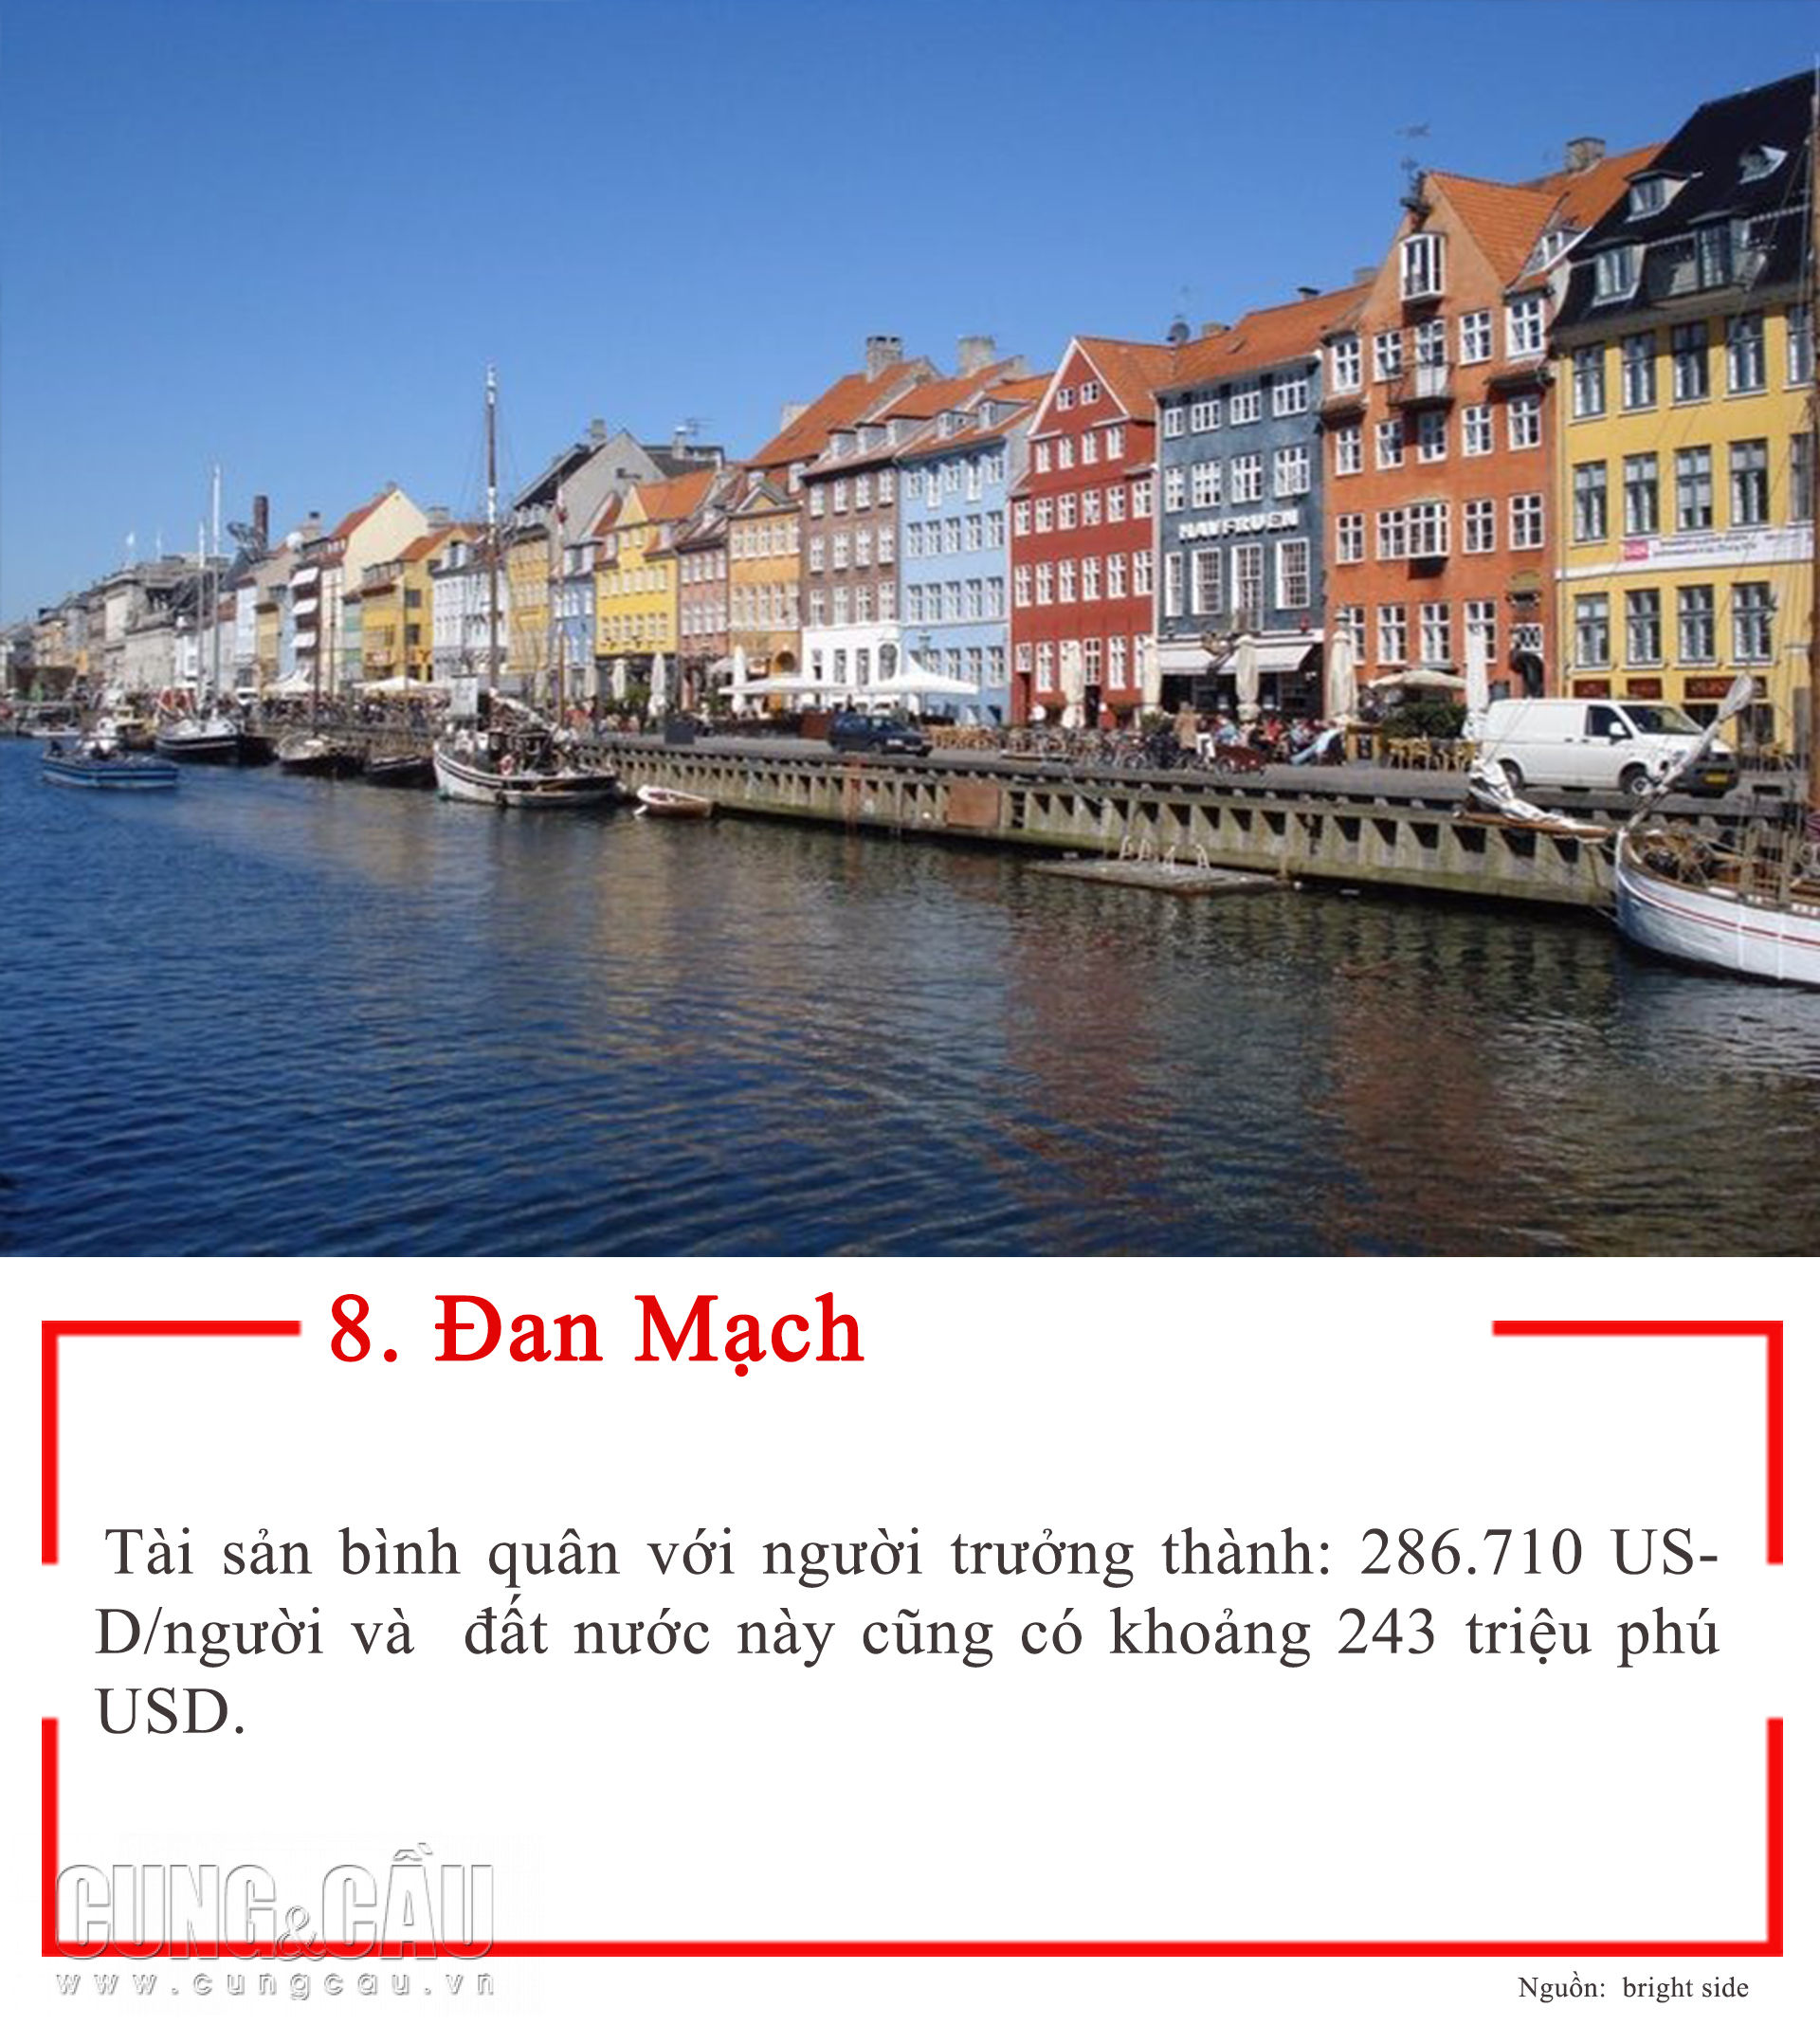 Thụy Sĩ đứng đầu top 10 quốc gia giàu nhất thế giới hiện nay